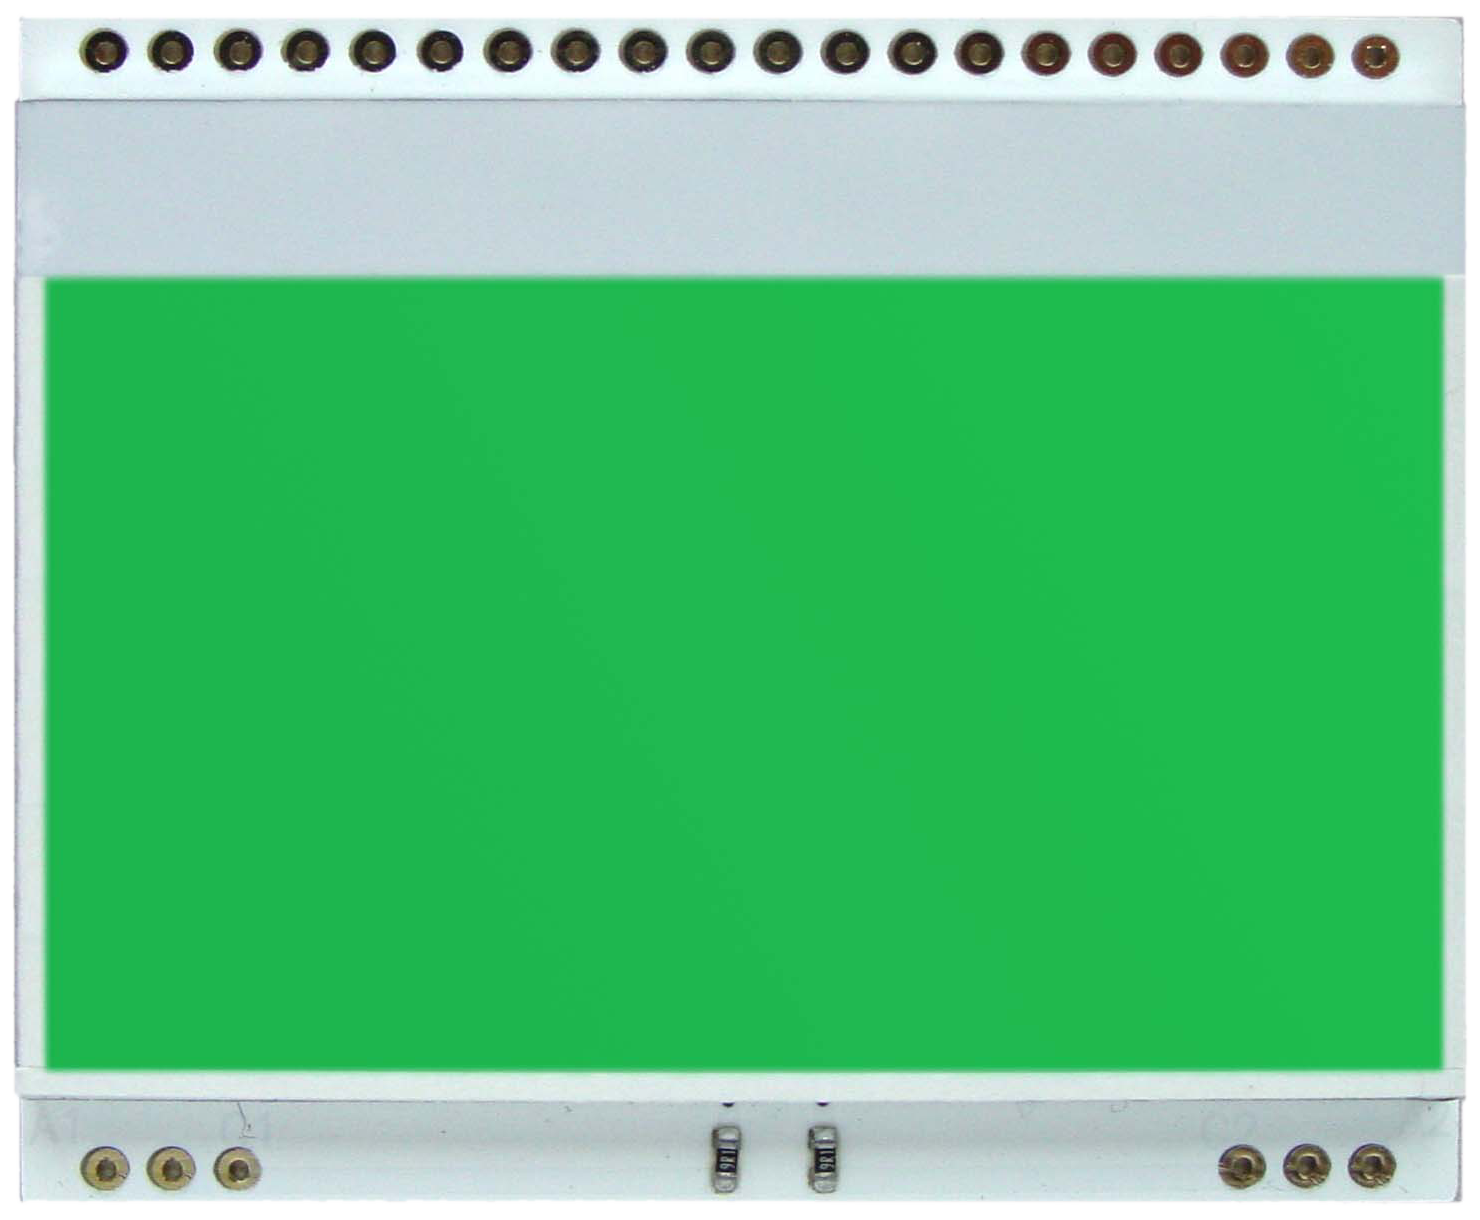 LED backlit unit for EA DOGM128-6, green